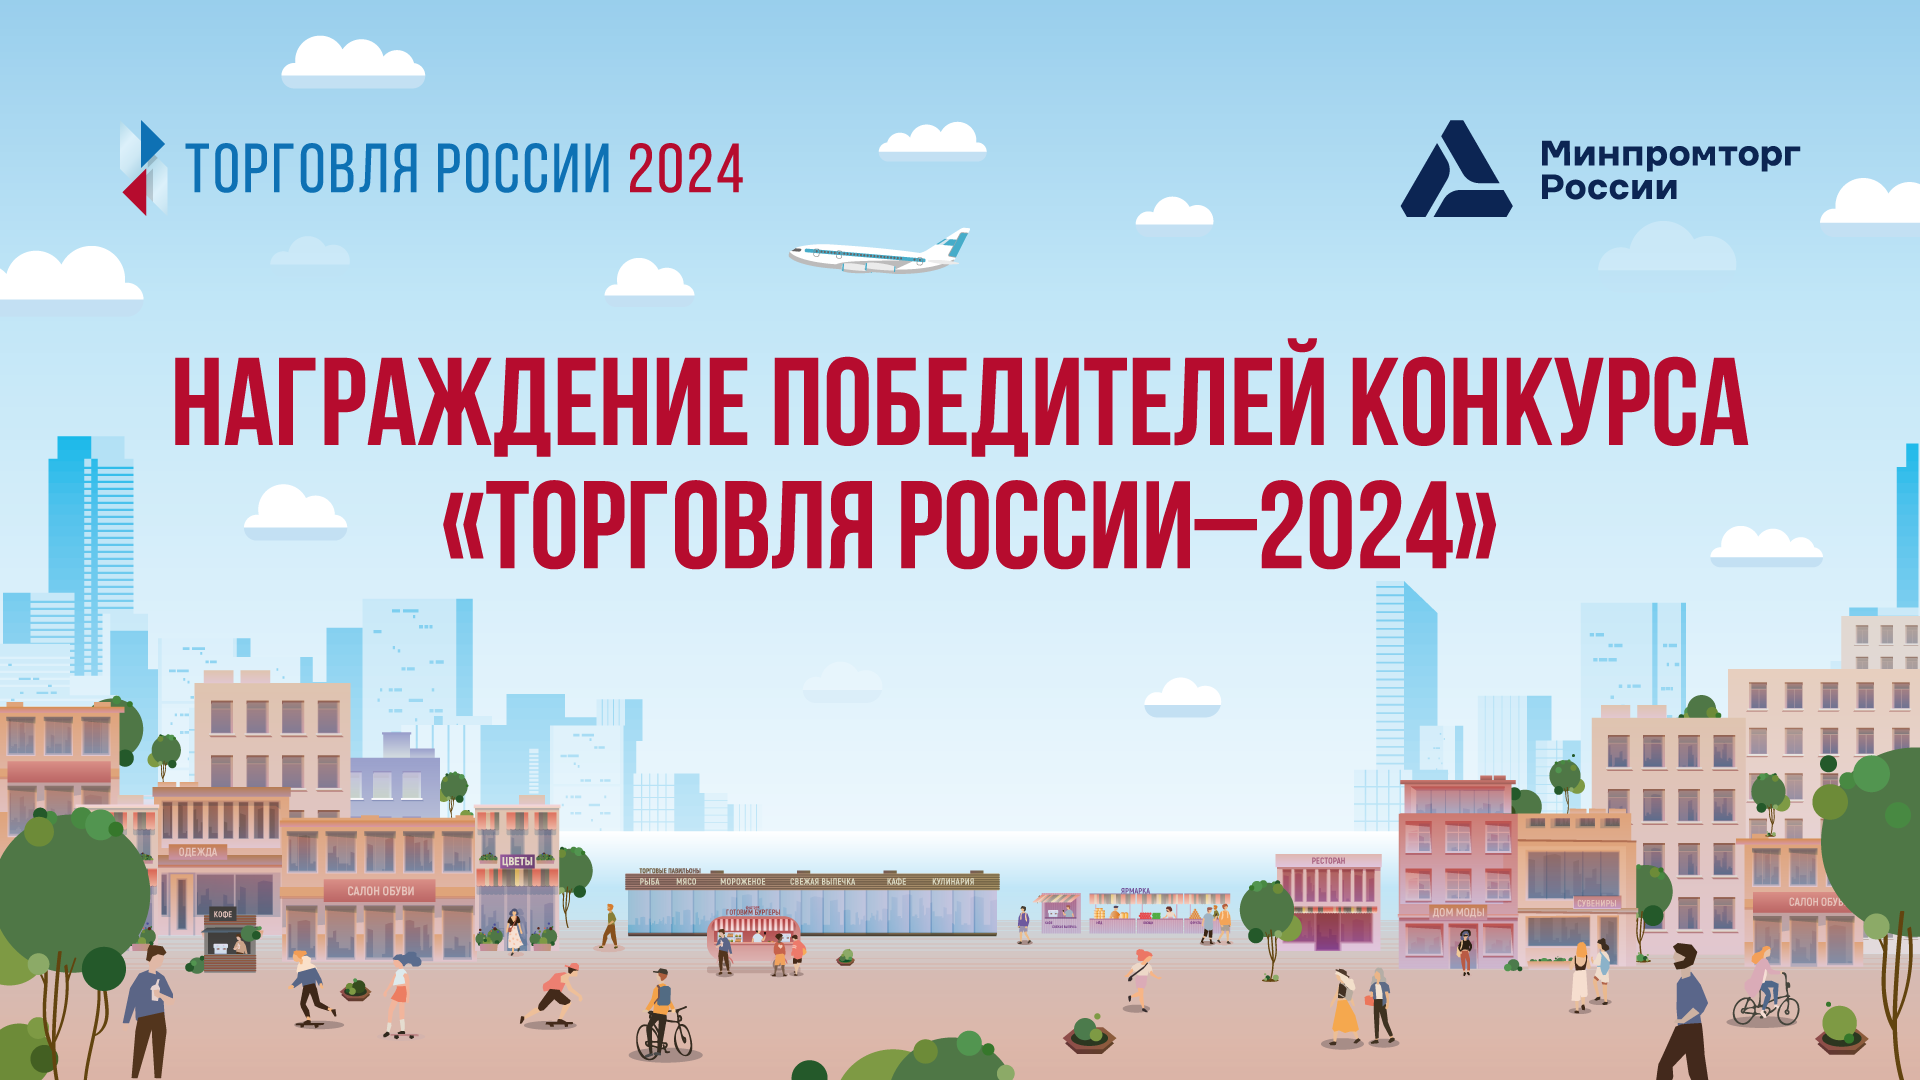 Награждение победителей конкурса «Торговля России» 2024 года состоится 29 мая 2024 г. в 18.30